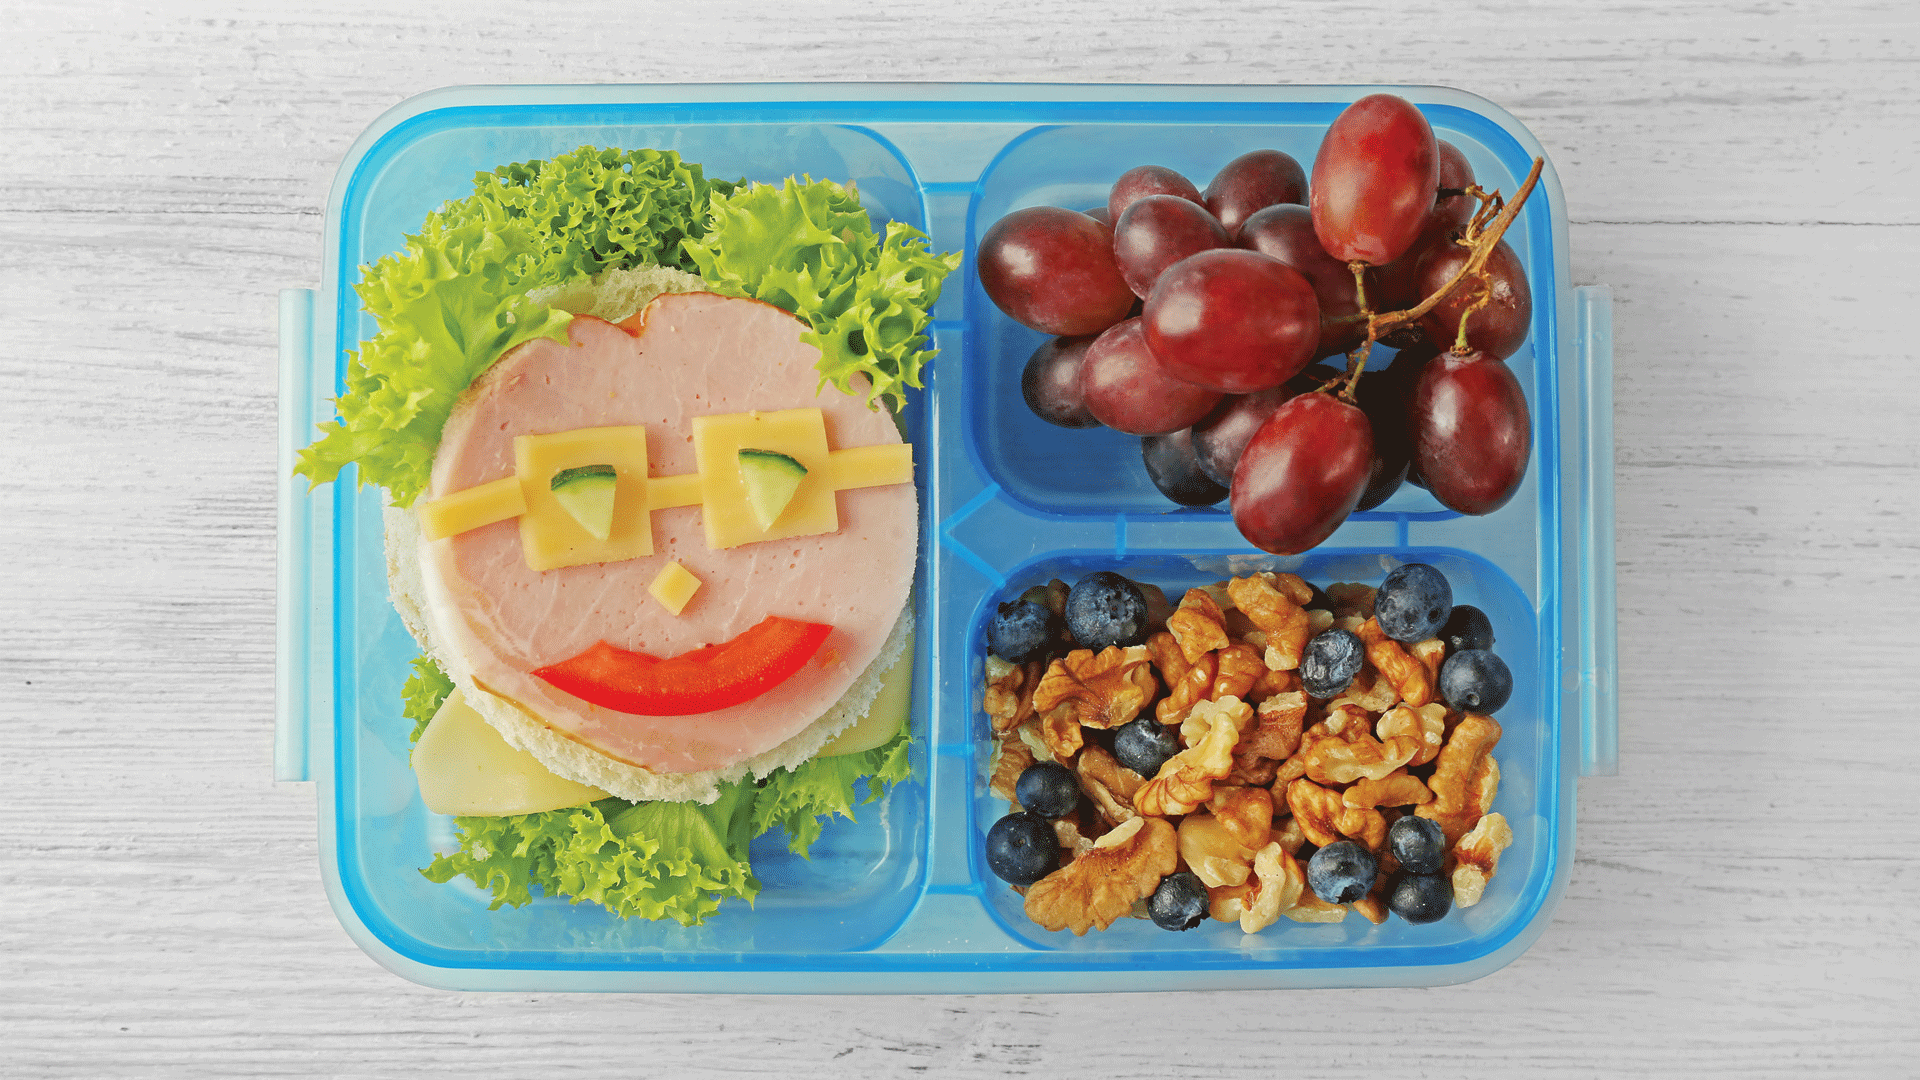 6 Eco-friendly lunch ideas